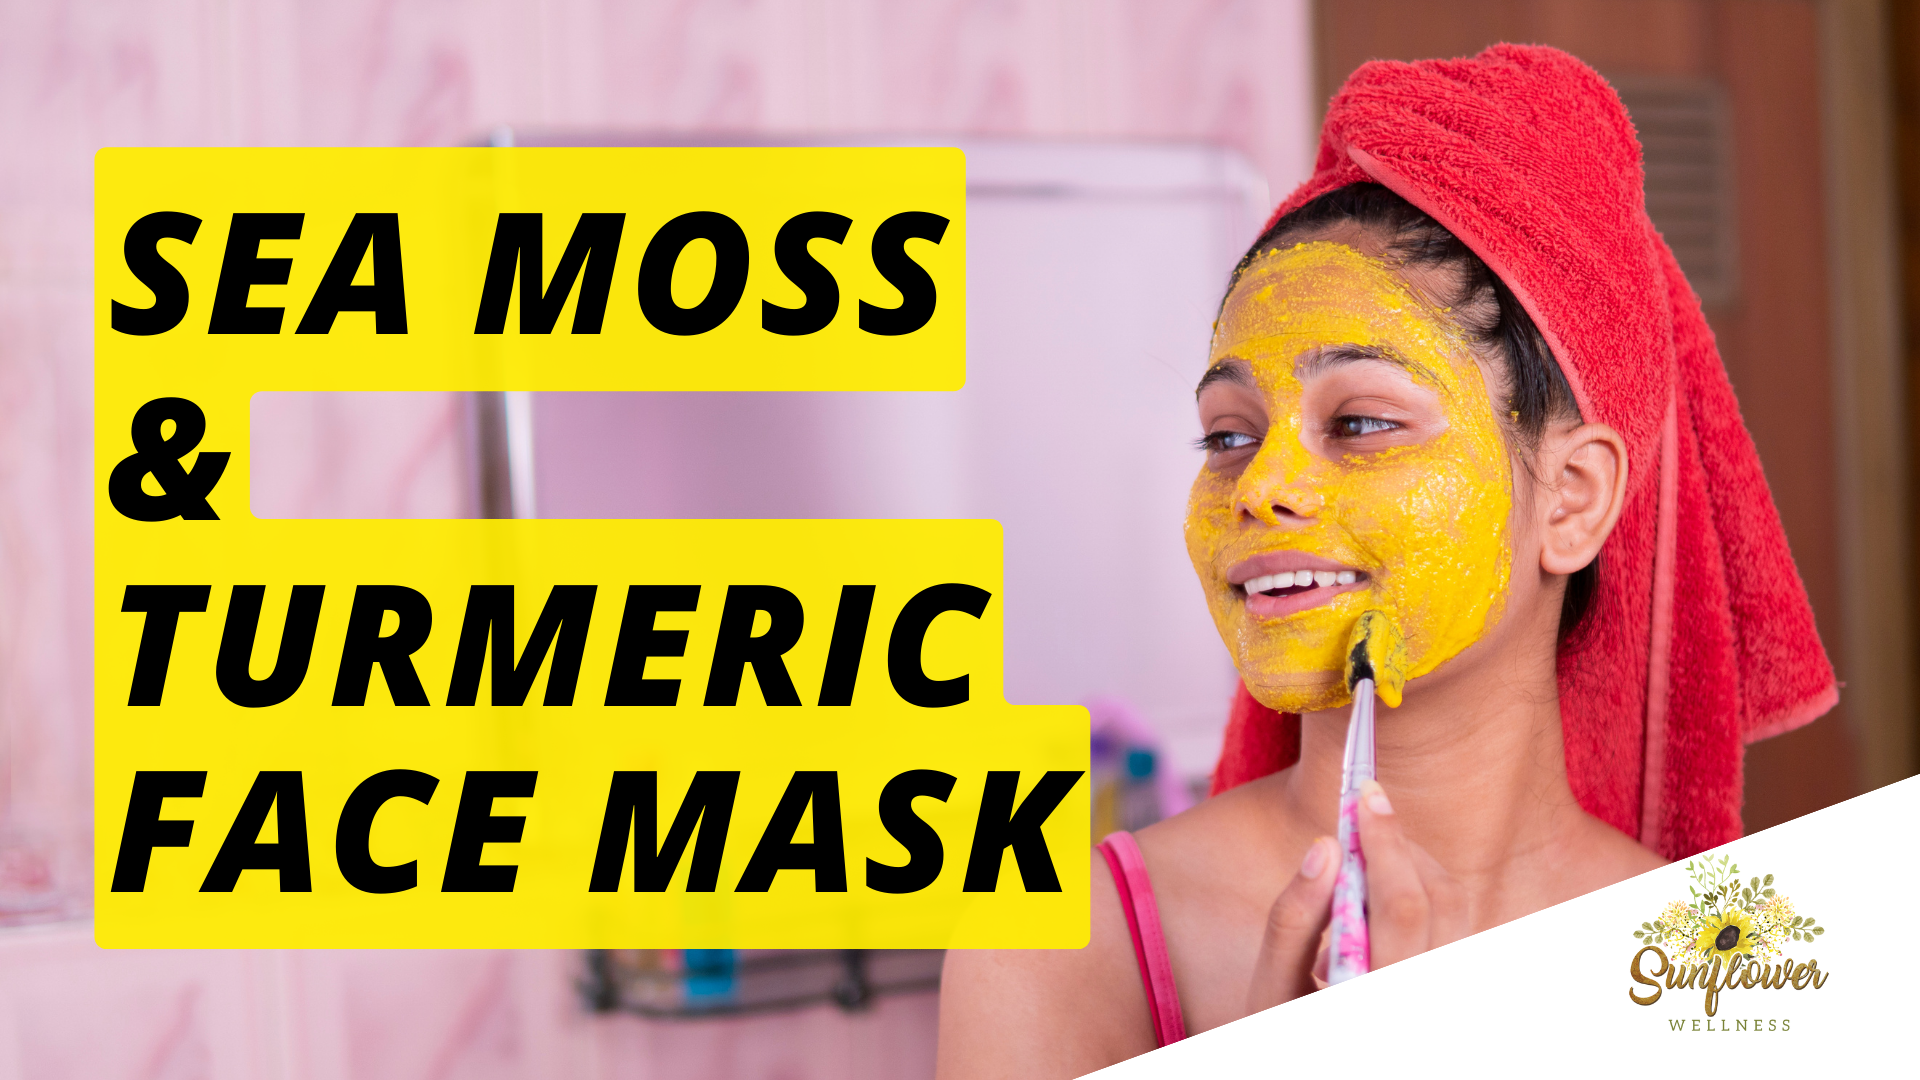 Sea Moss Turmeric Mask Recipe DIY Dr Sebi seamoss